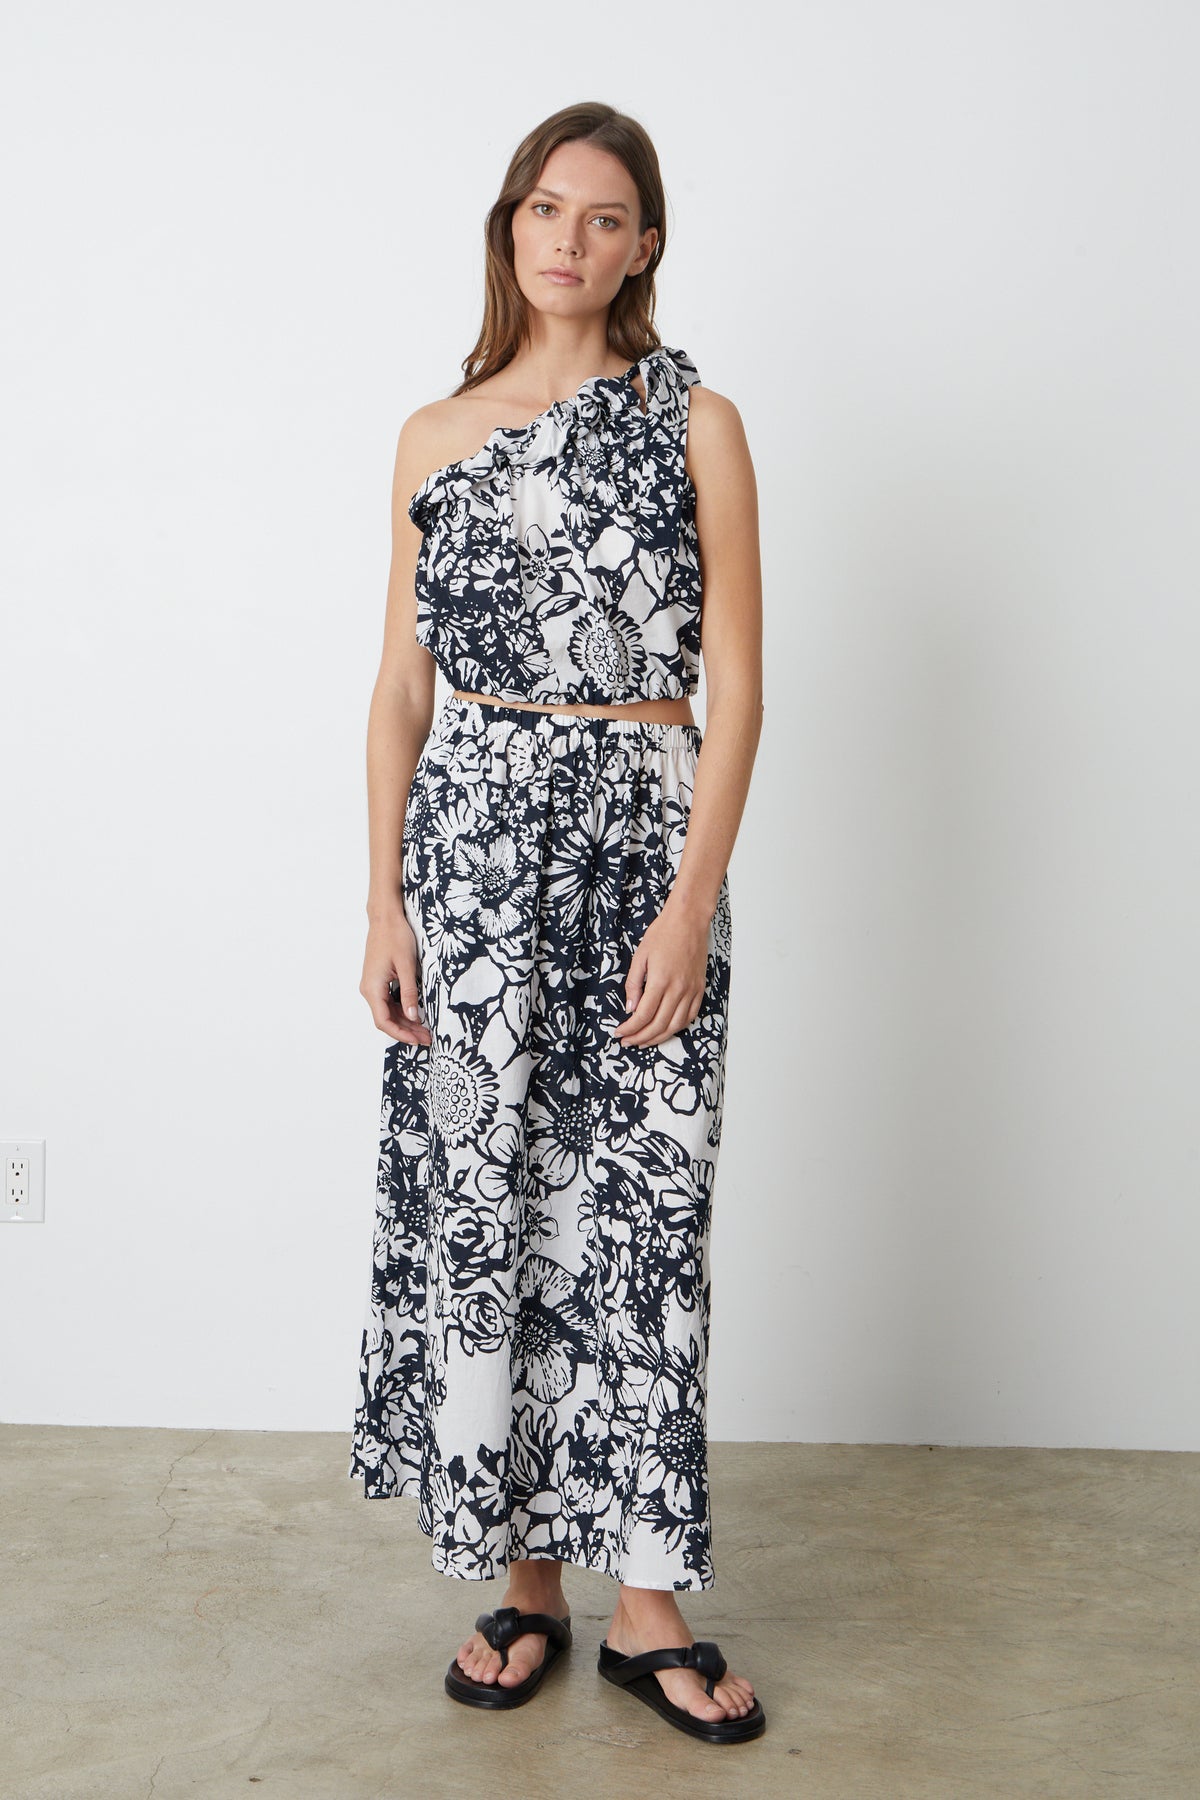 A model wearing a Velvet by Graham & Spencer Juliana Printed Maxi Skirt.-26793045688513